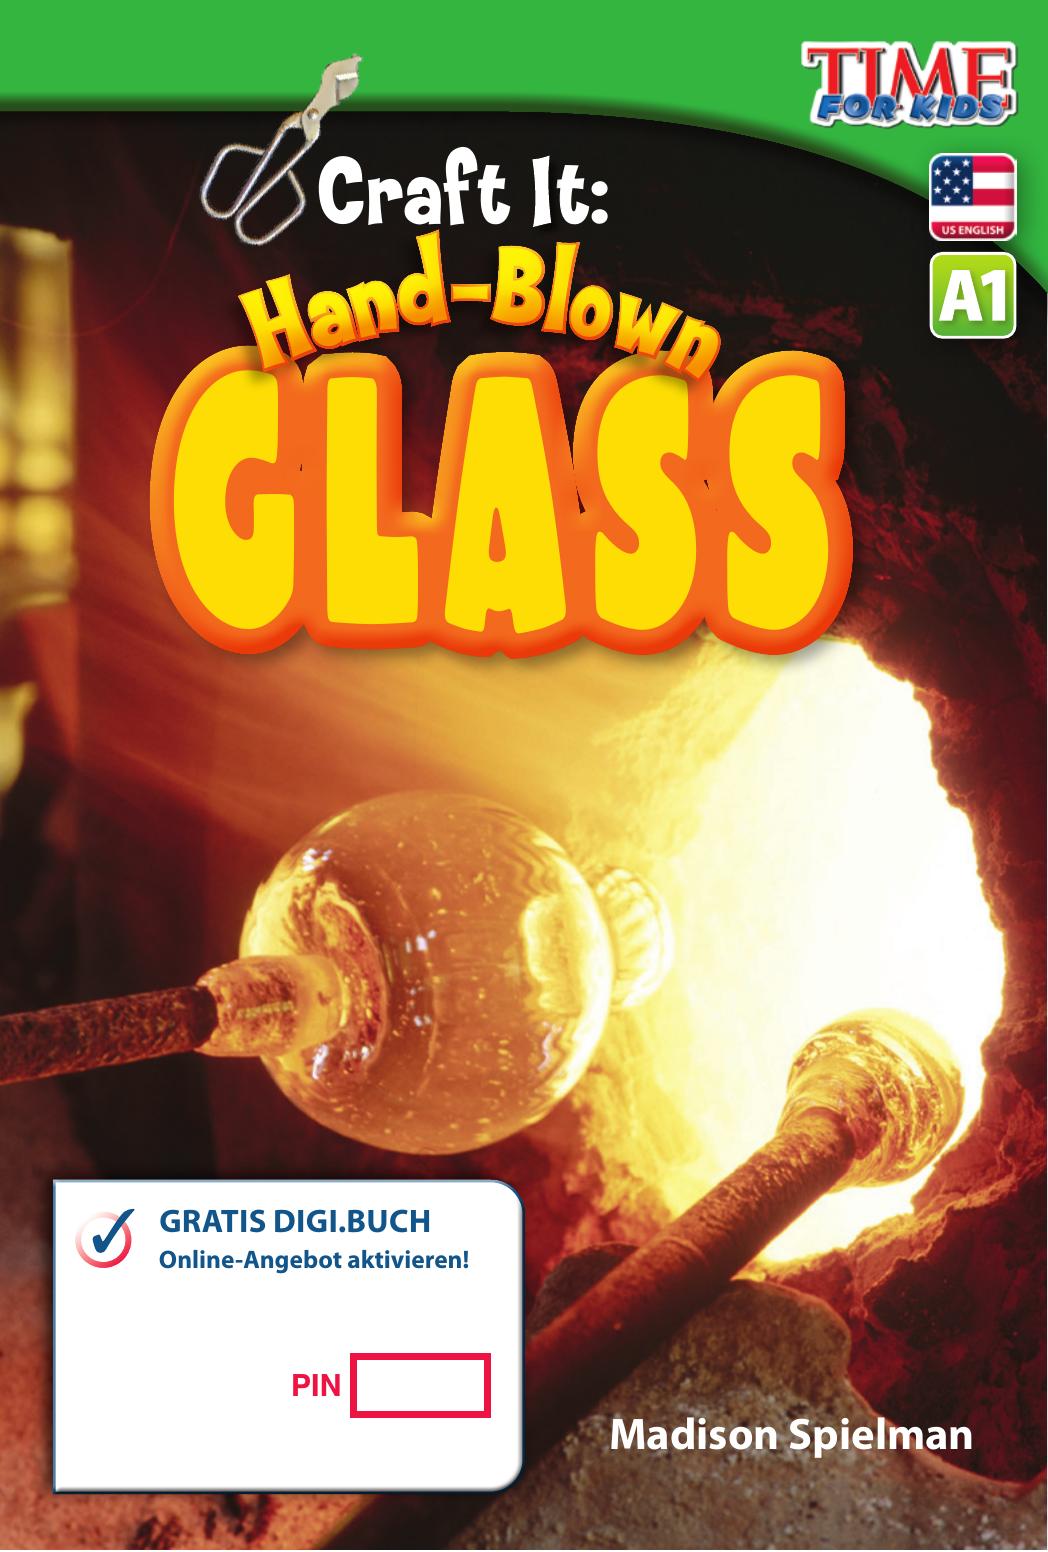 A1 – Craft It: Hand-Blown Glass